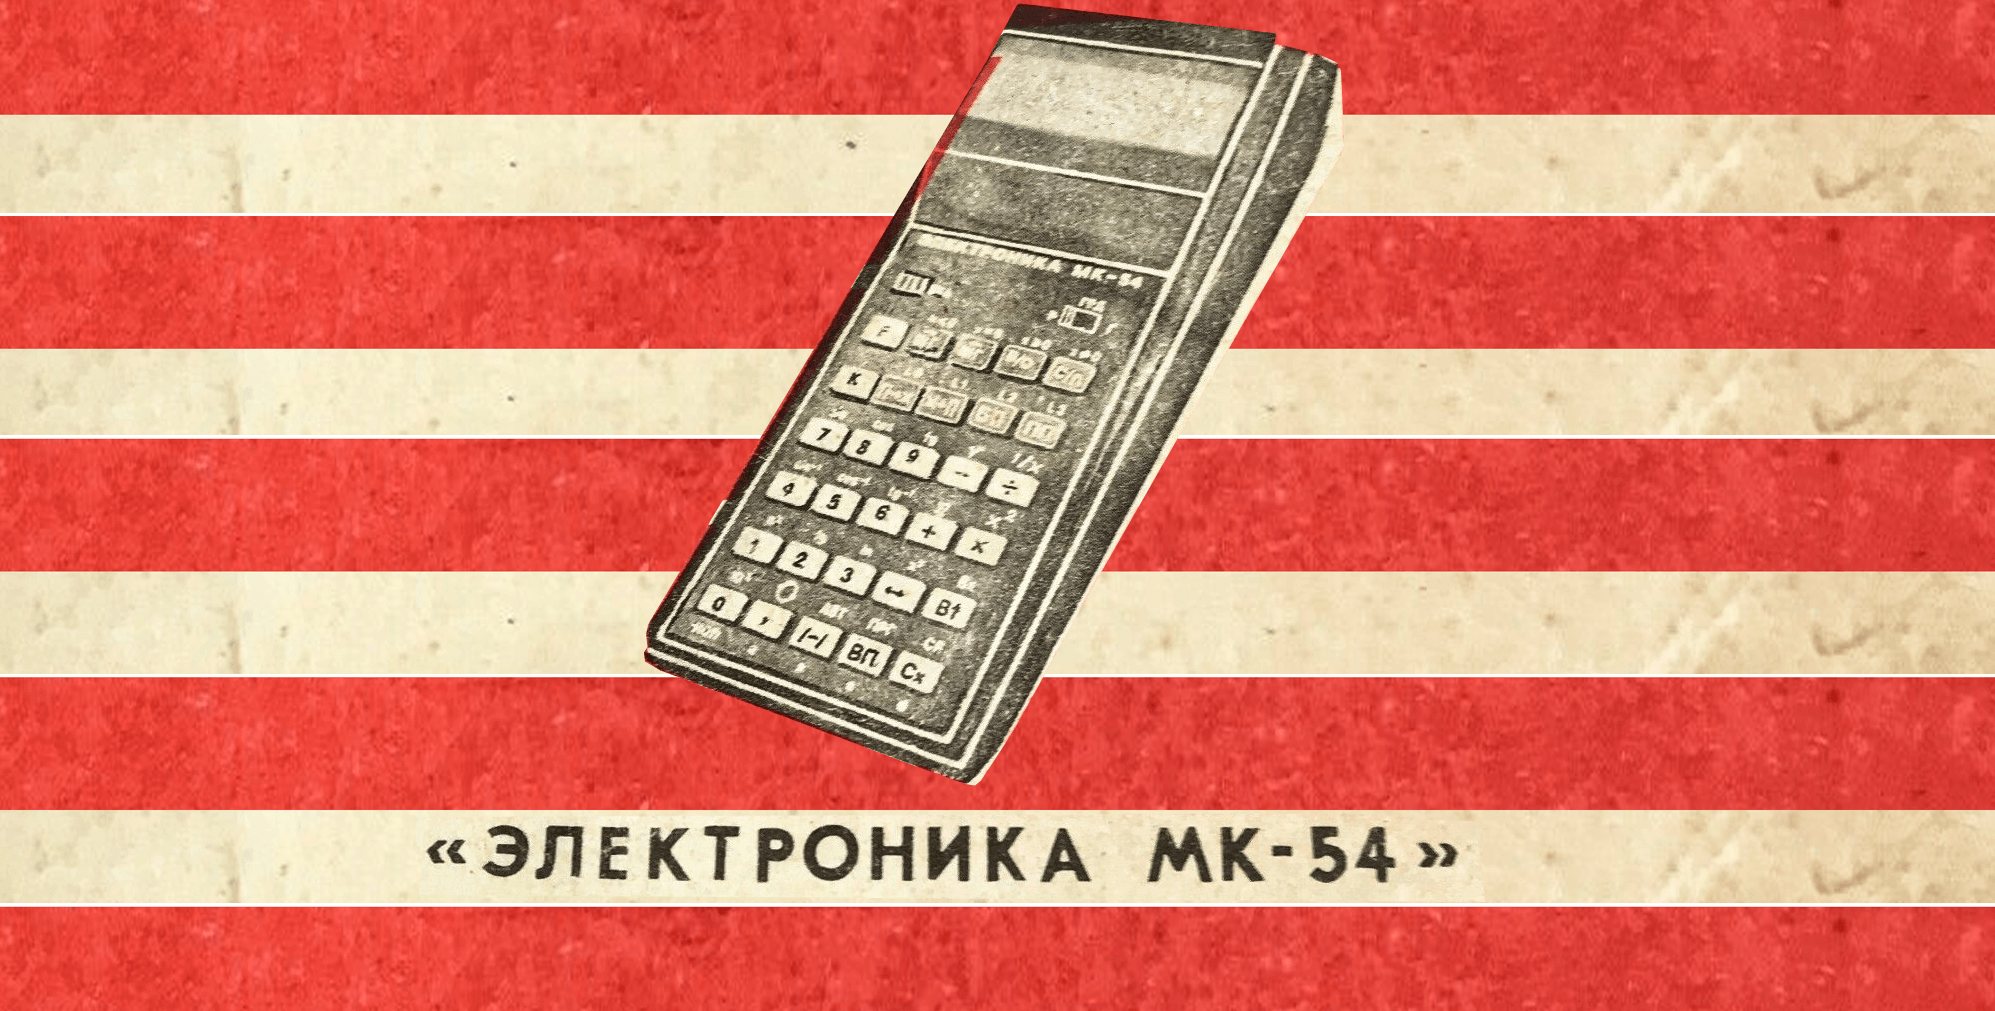 Карманный компьютер из 1985 года: программируемый калькулятор «Электроника МК-54»